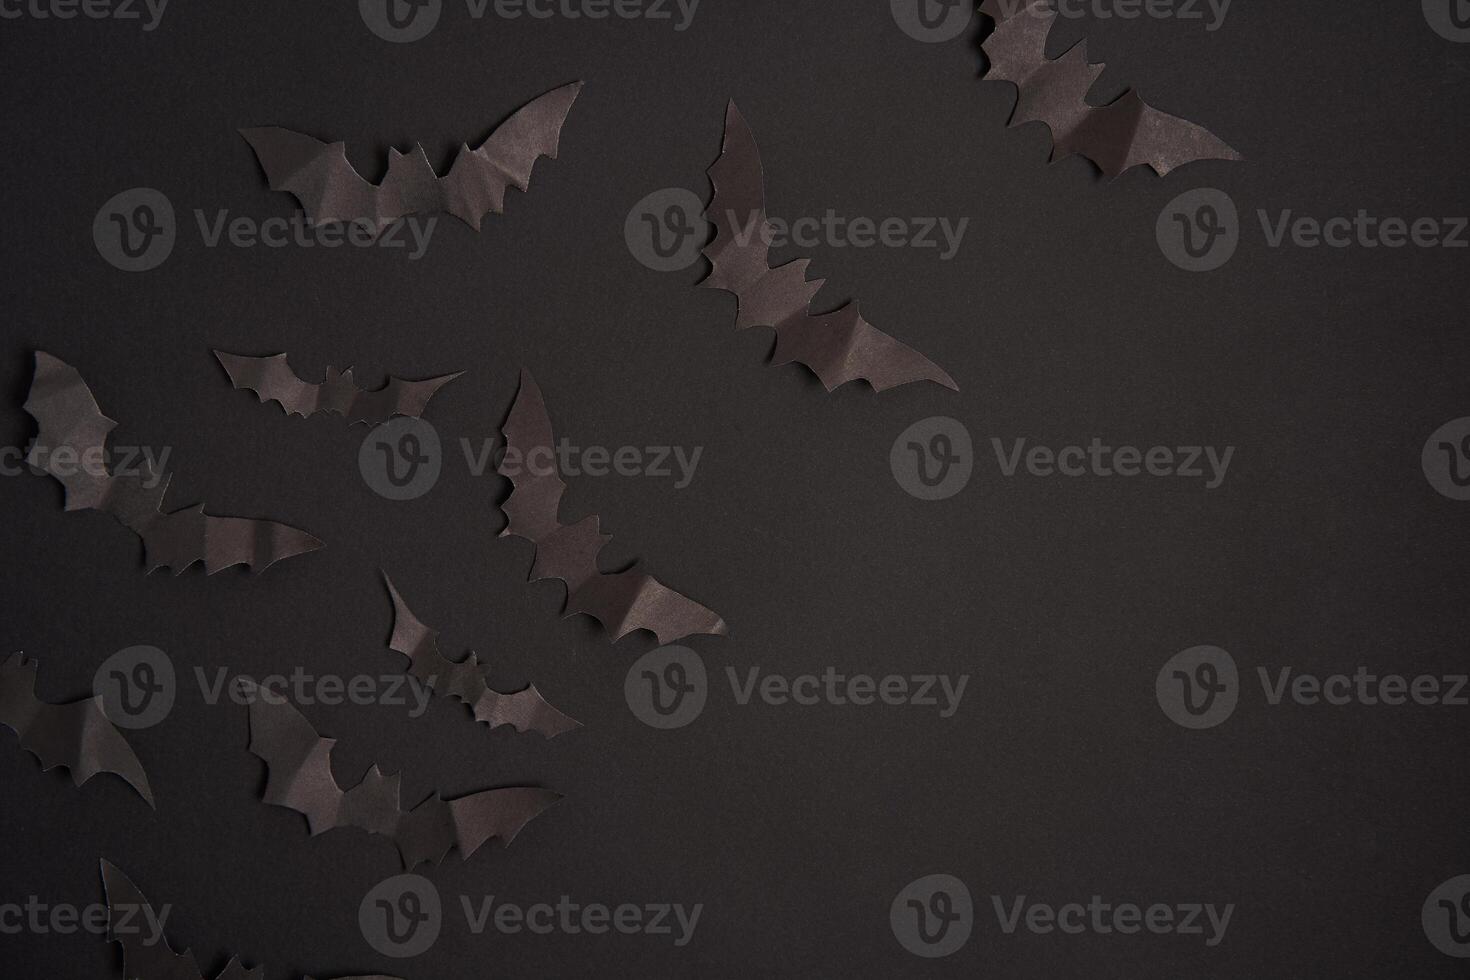 dia das Bruxas decoração conceito Preto papel morcegos Preto cartão fundo foto